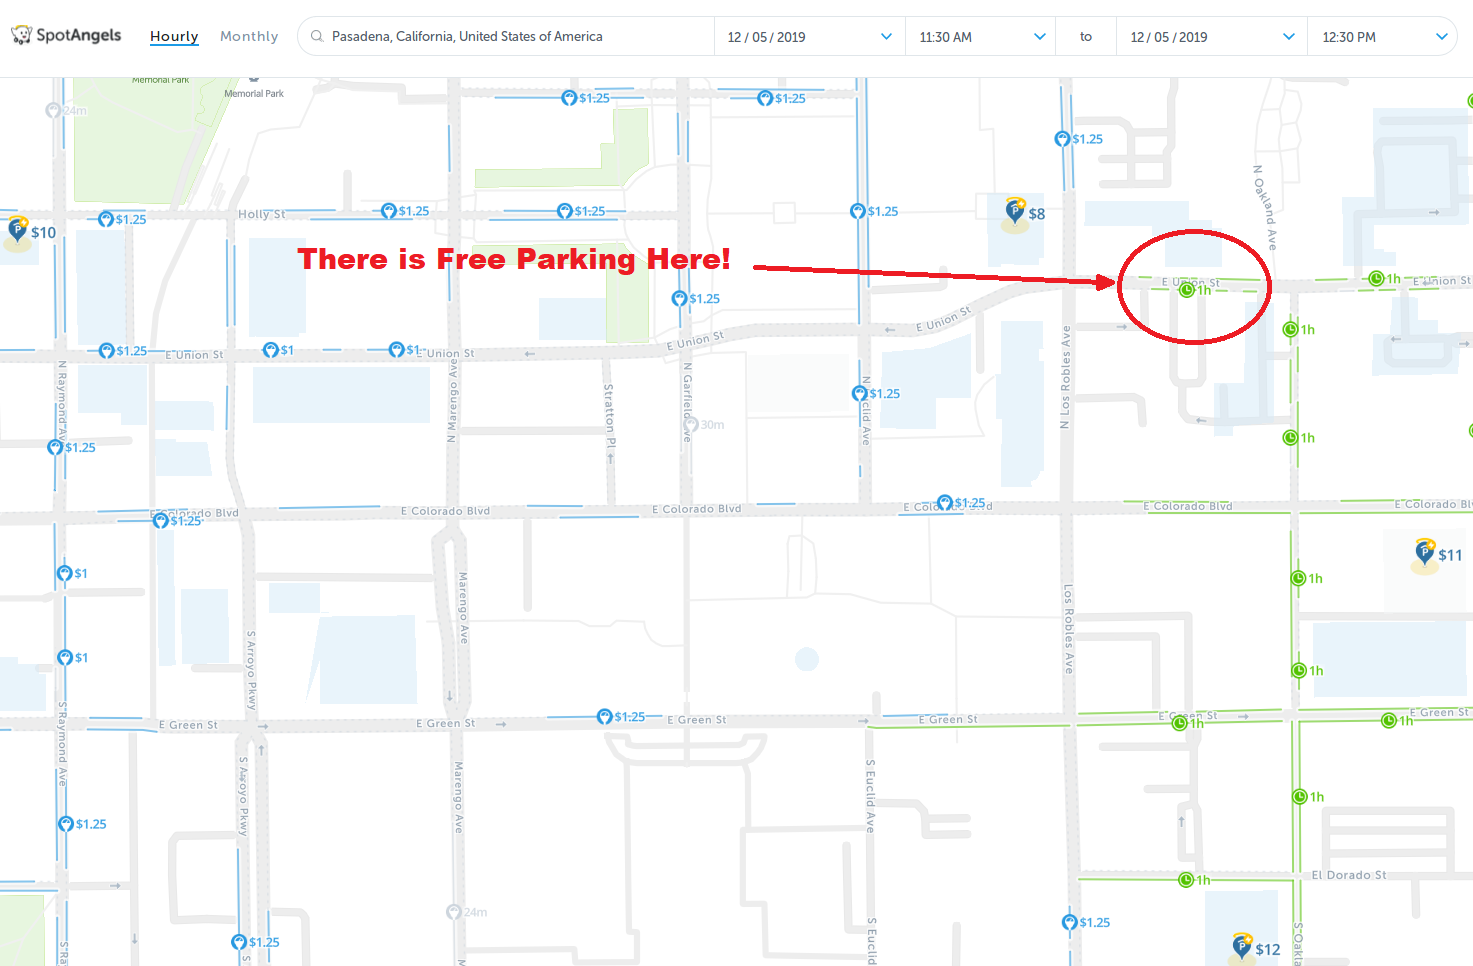 map of free parking in Pasadena - SpotAngels